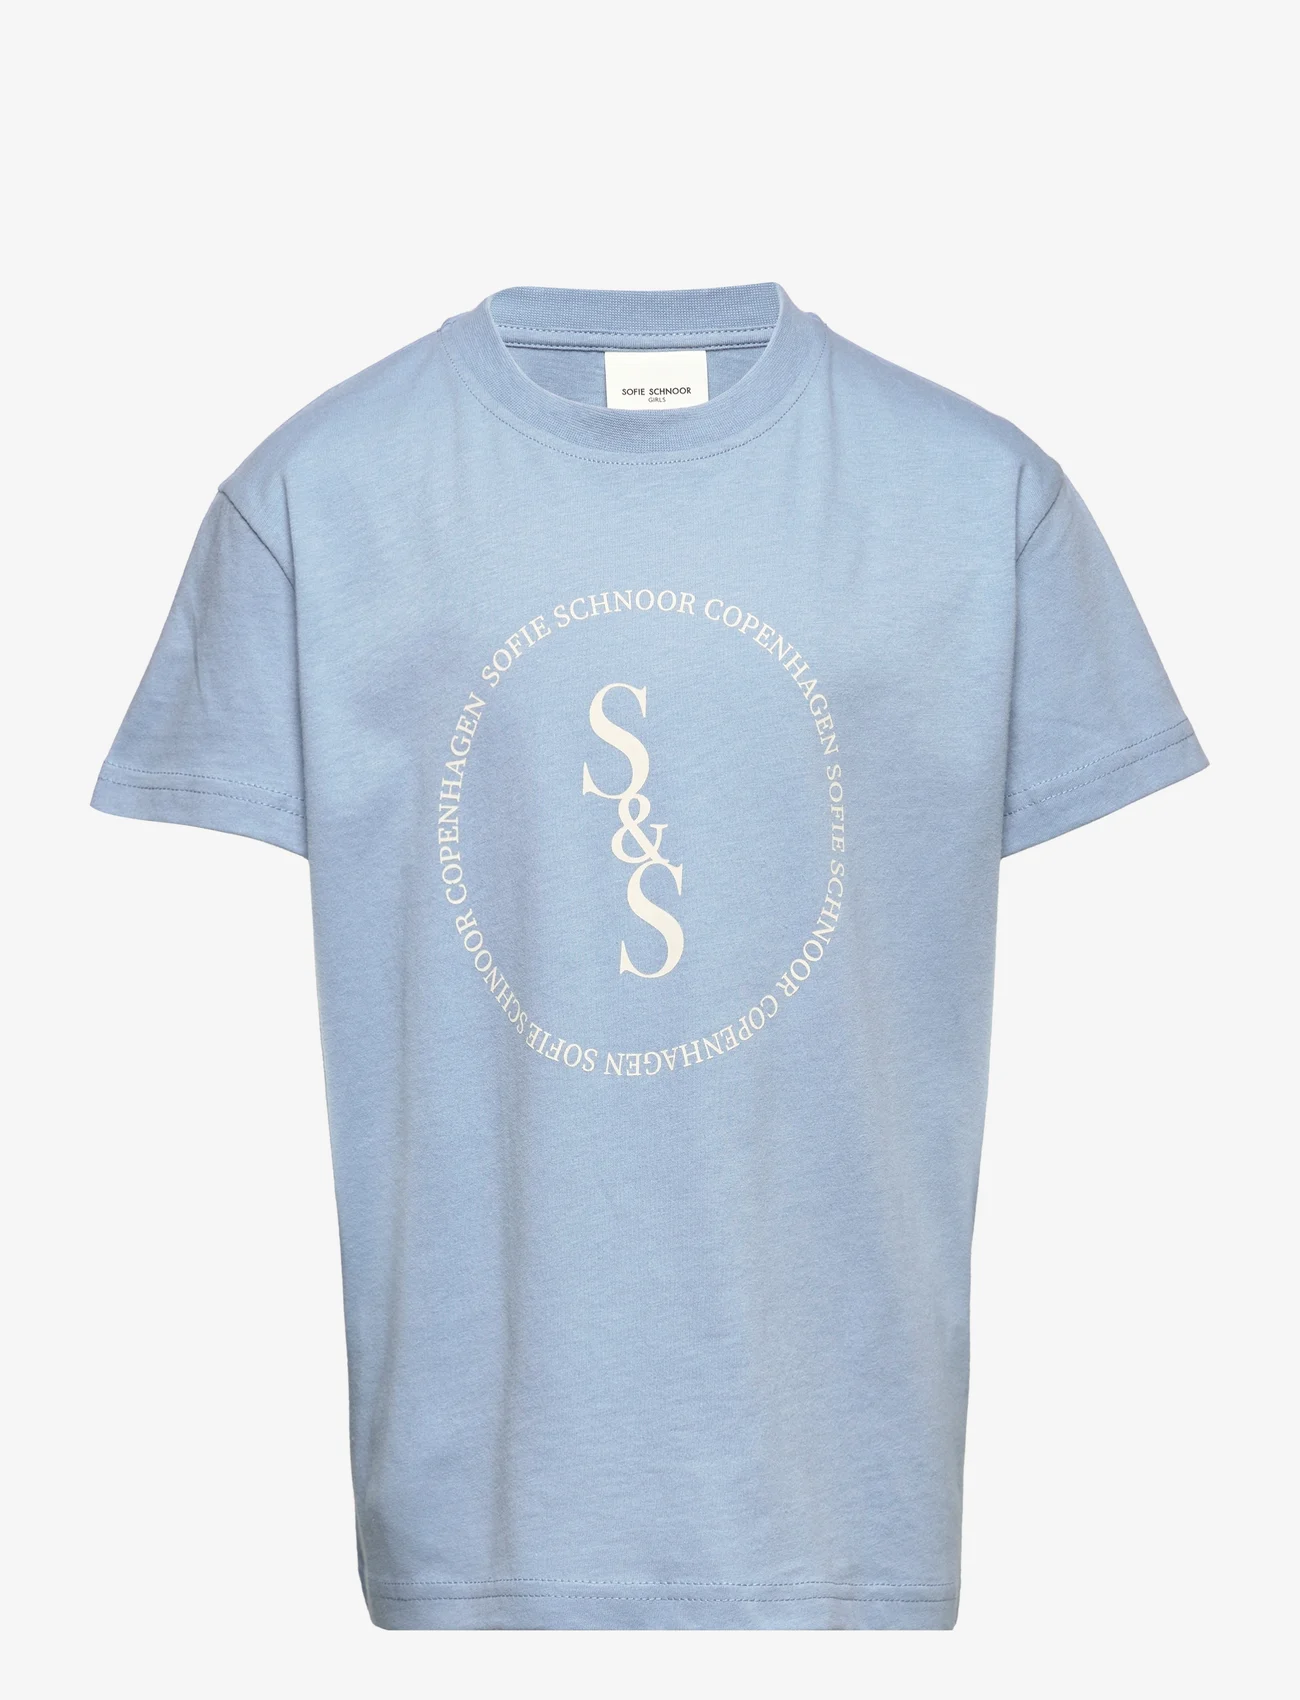 Sofie Schnoor Baby and Kids - T-shirt - lyhythihaiset t-paidat - light blue - 0